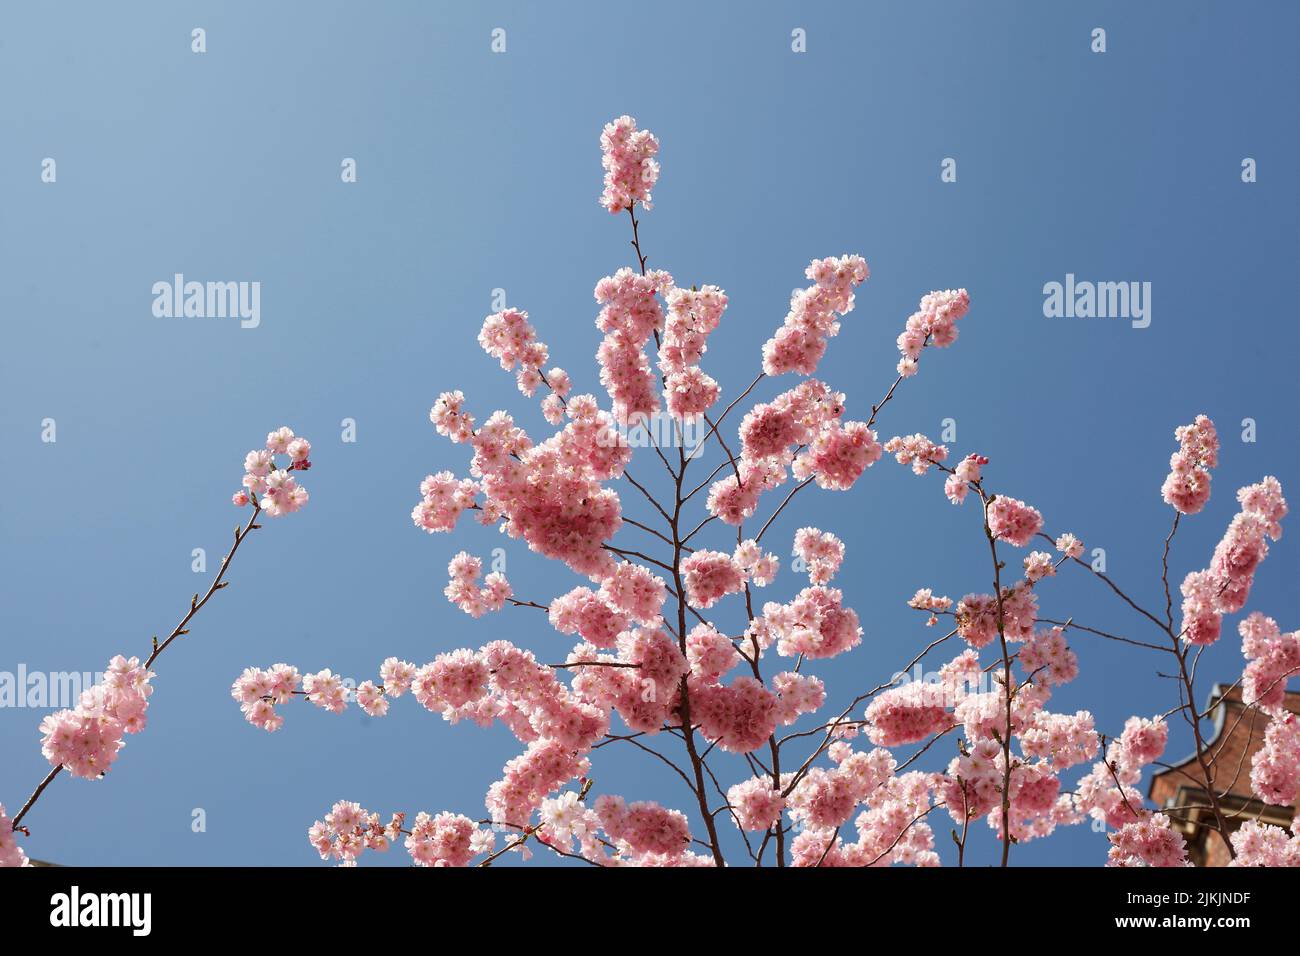 Rosa Kirschblüten auf  Baumzweigen, Blauer Himmel Stock Photo